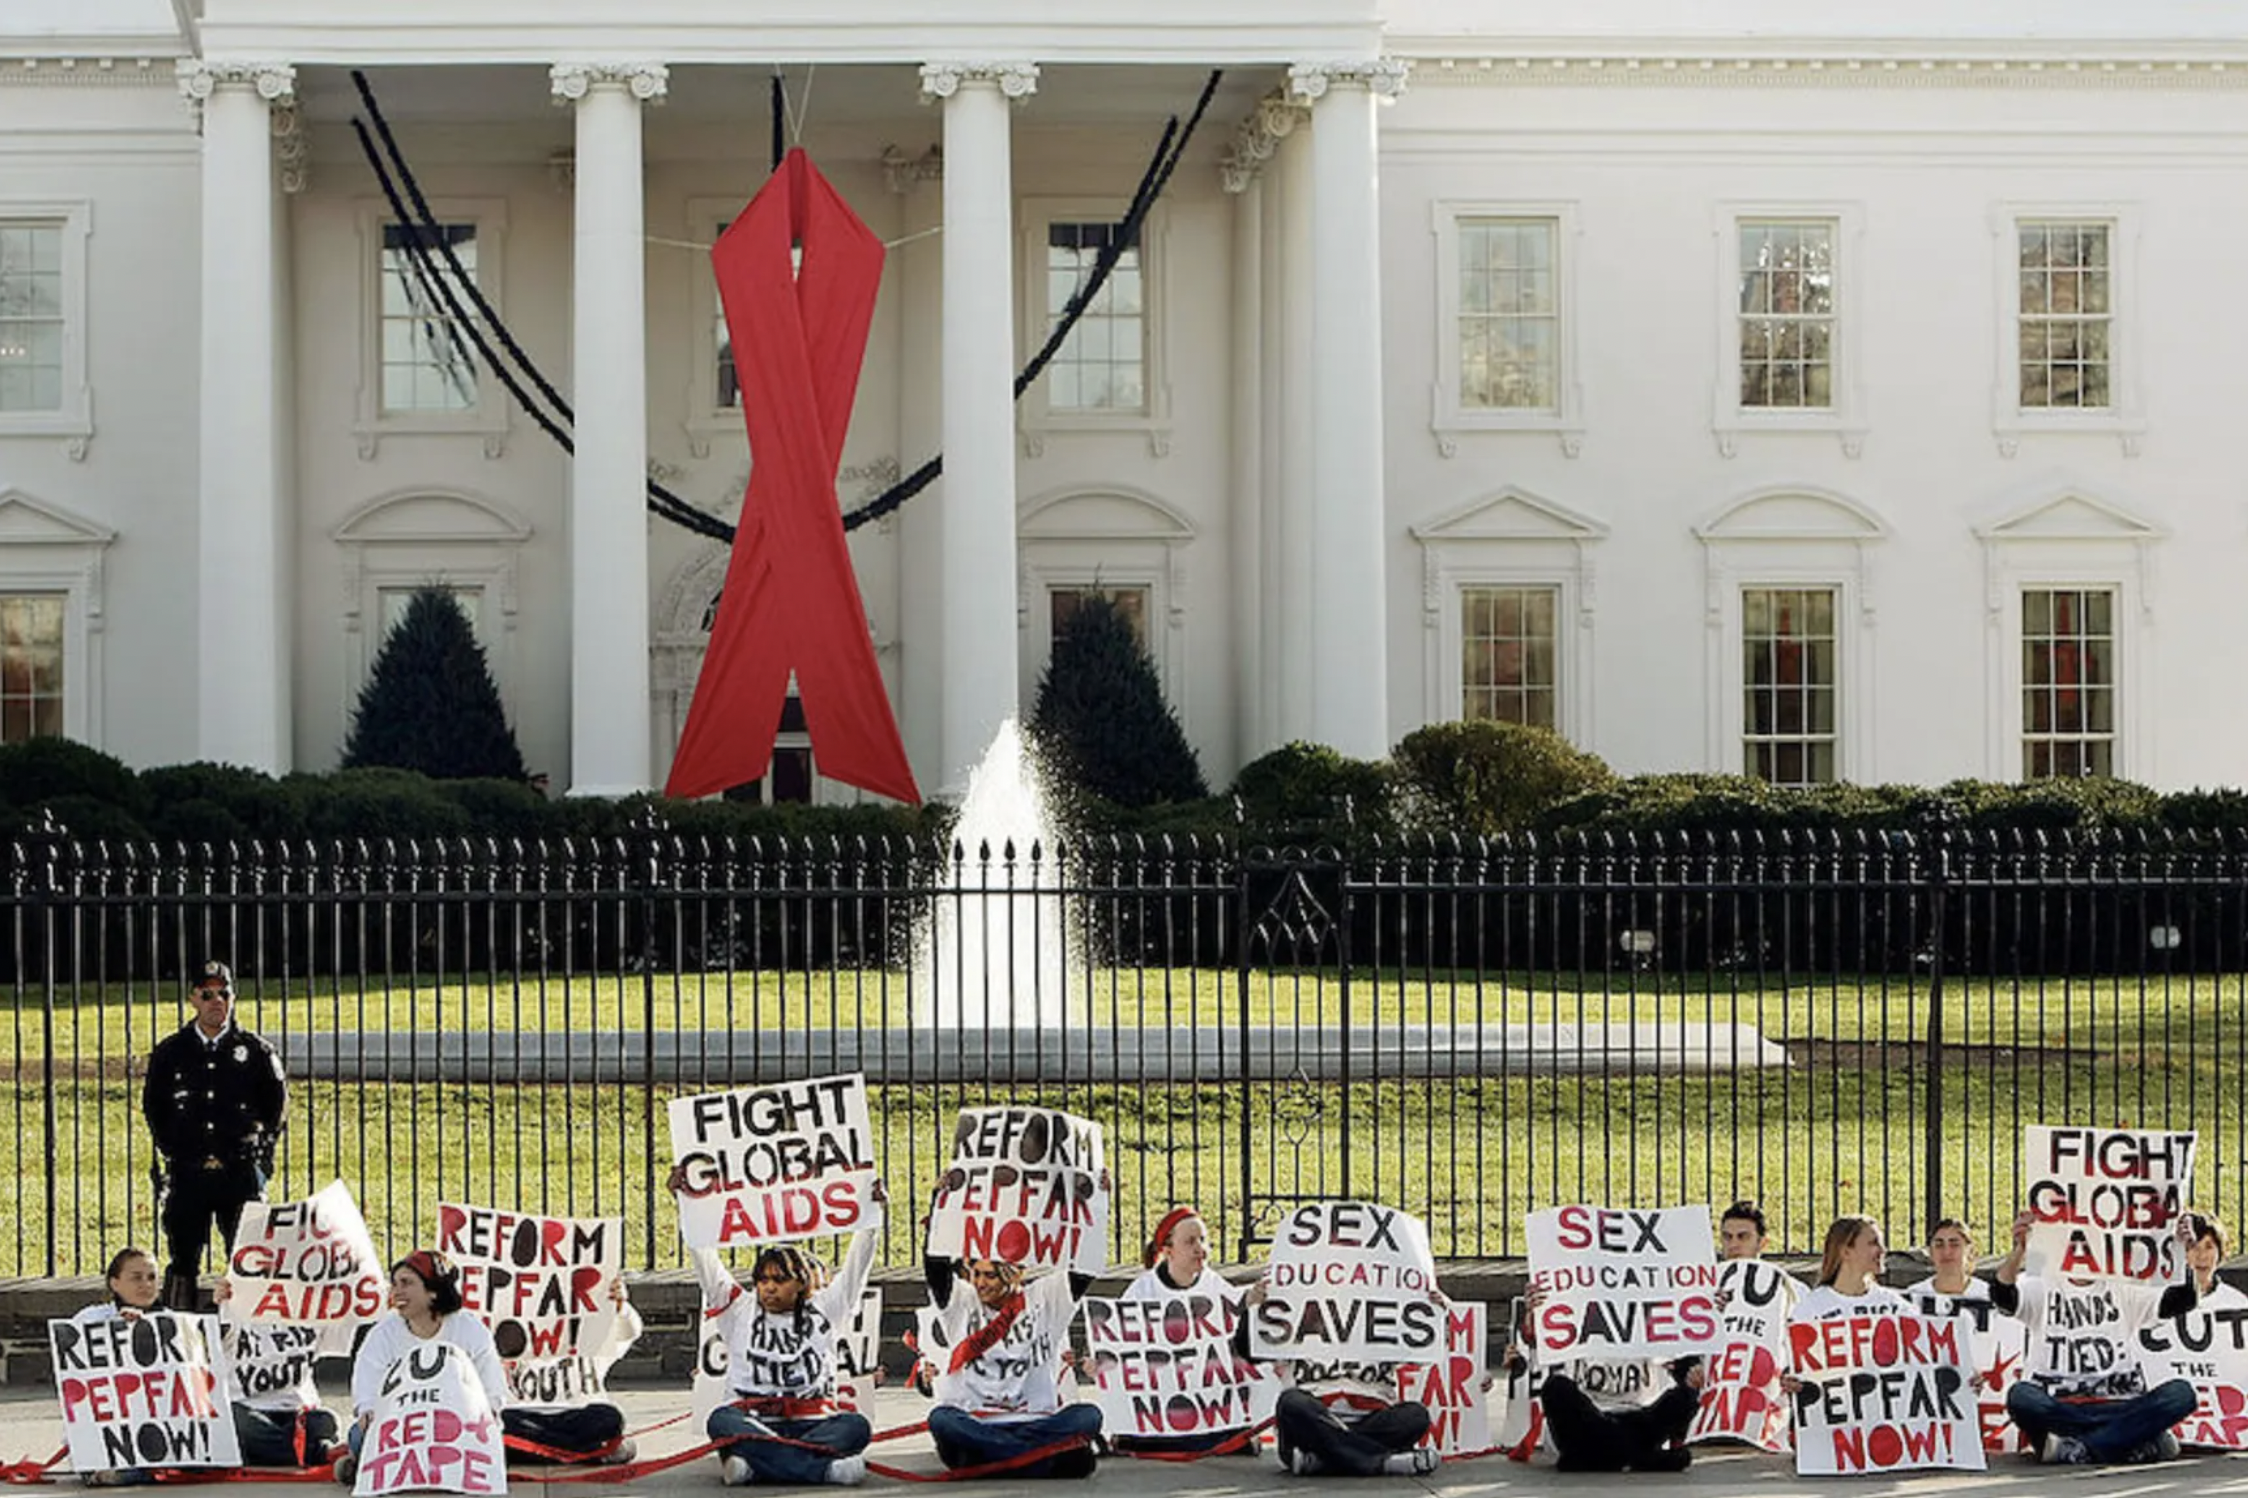 AIDS PEPFAR activists